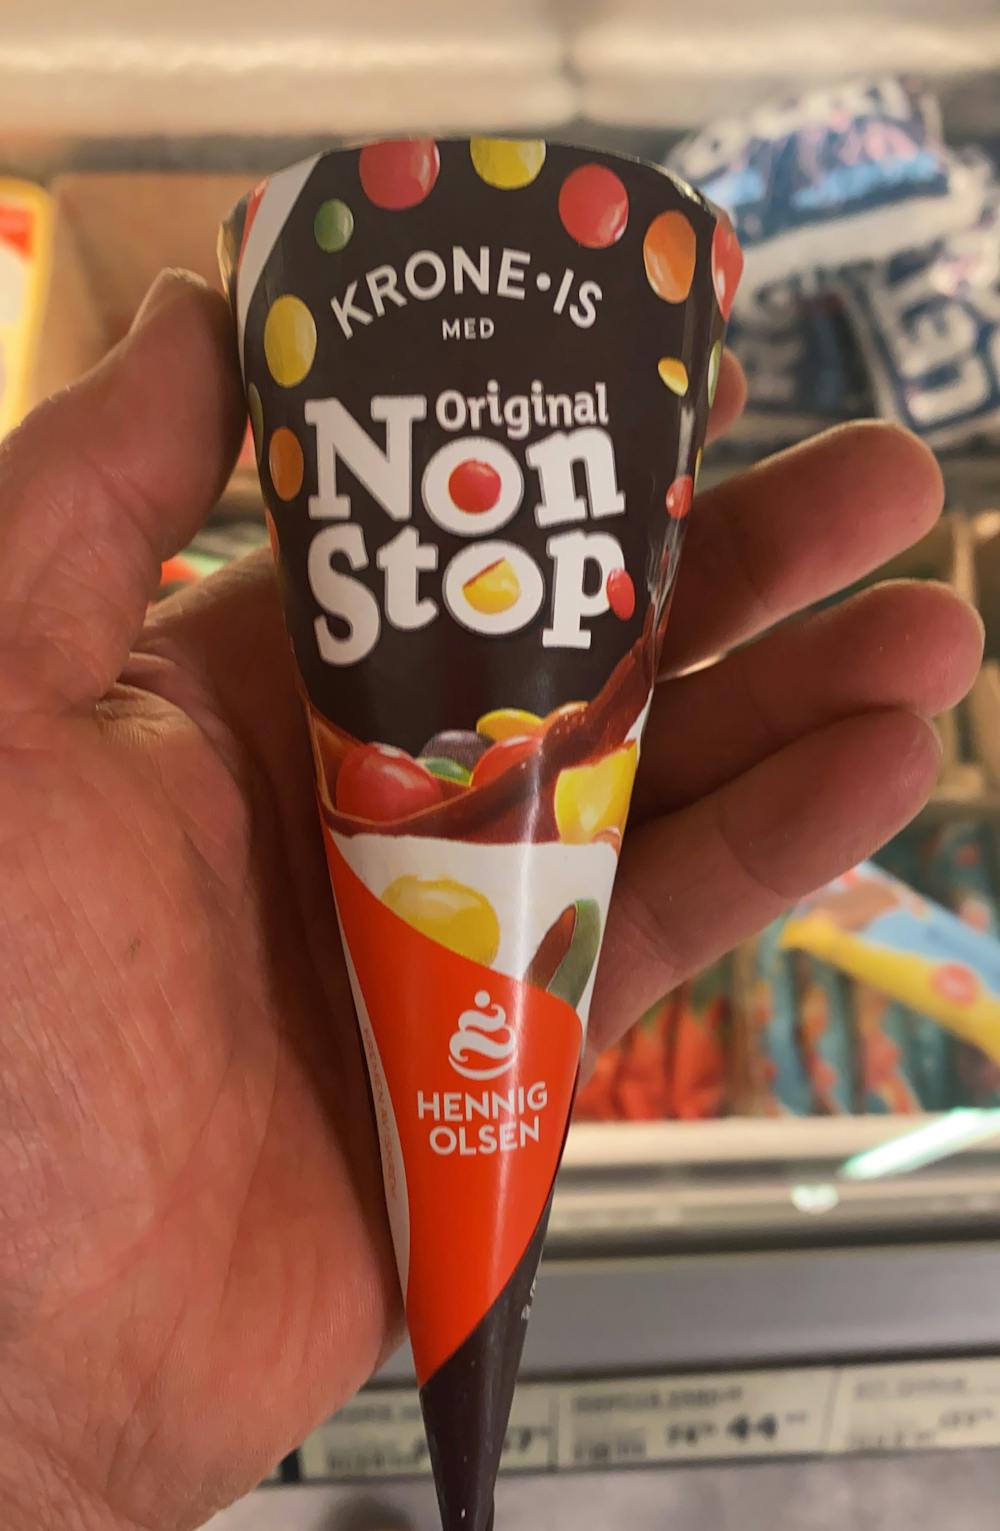 Krone-is non stop, Hennig Olsen